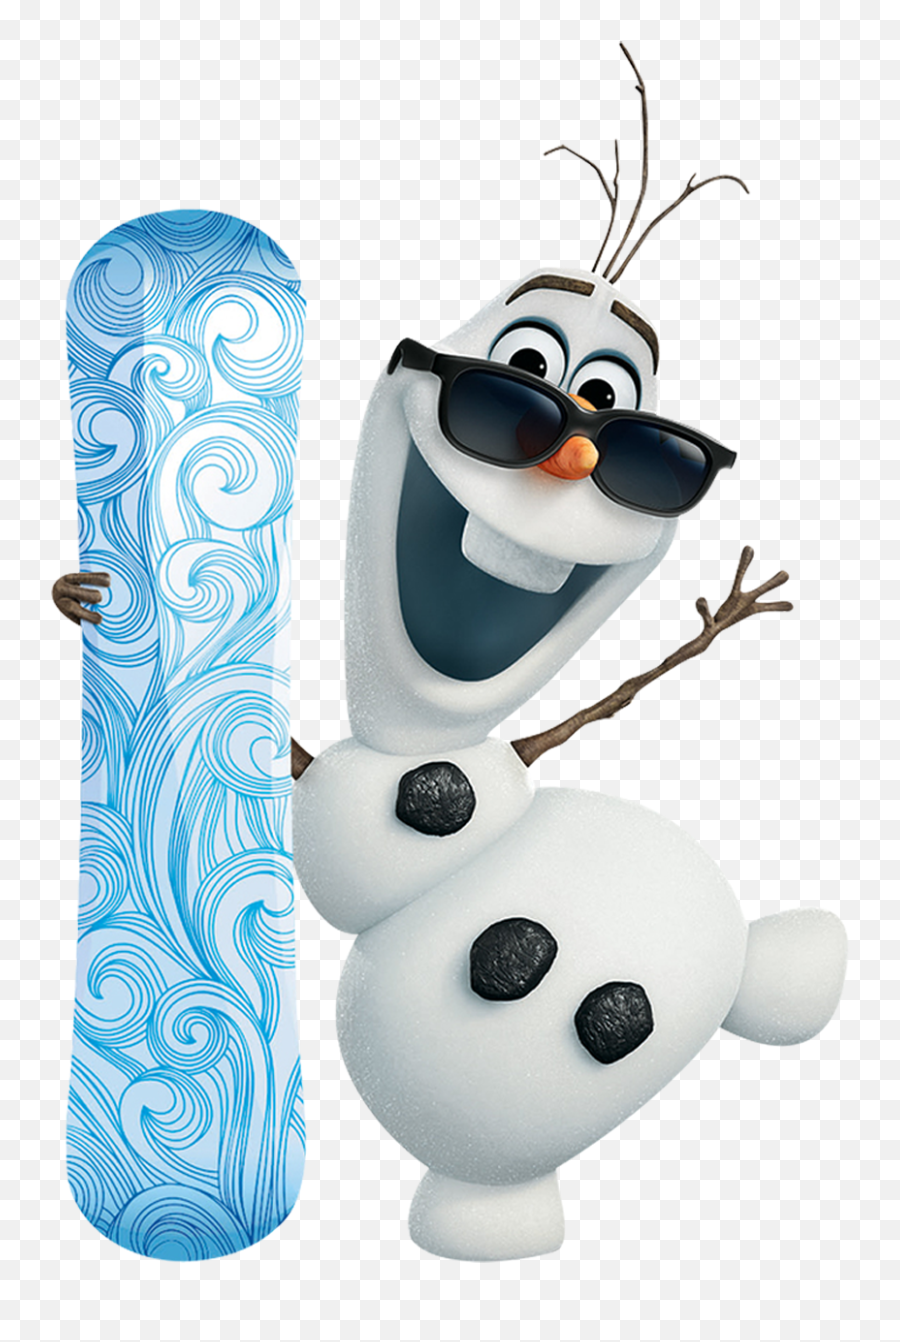 Frozen Png Images Elsa Anna Olaf - Olaf Transparent Background Emoji,Frozen Clipart